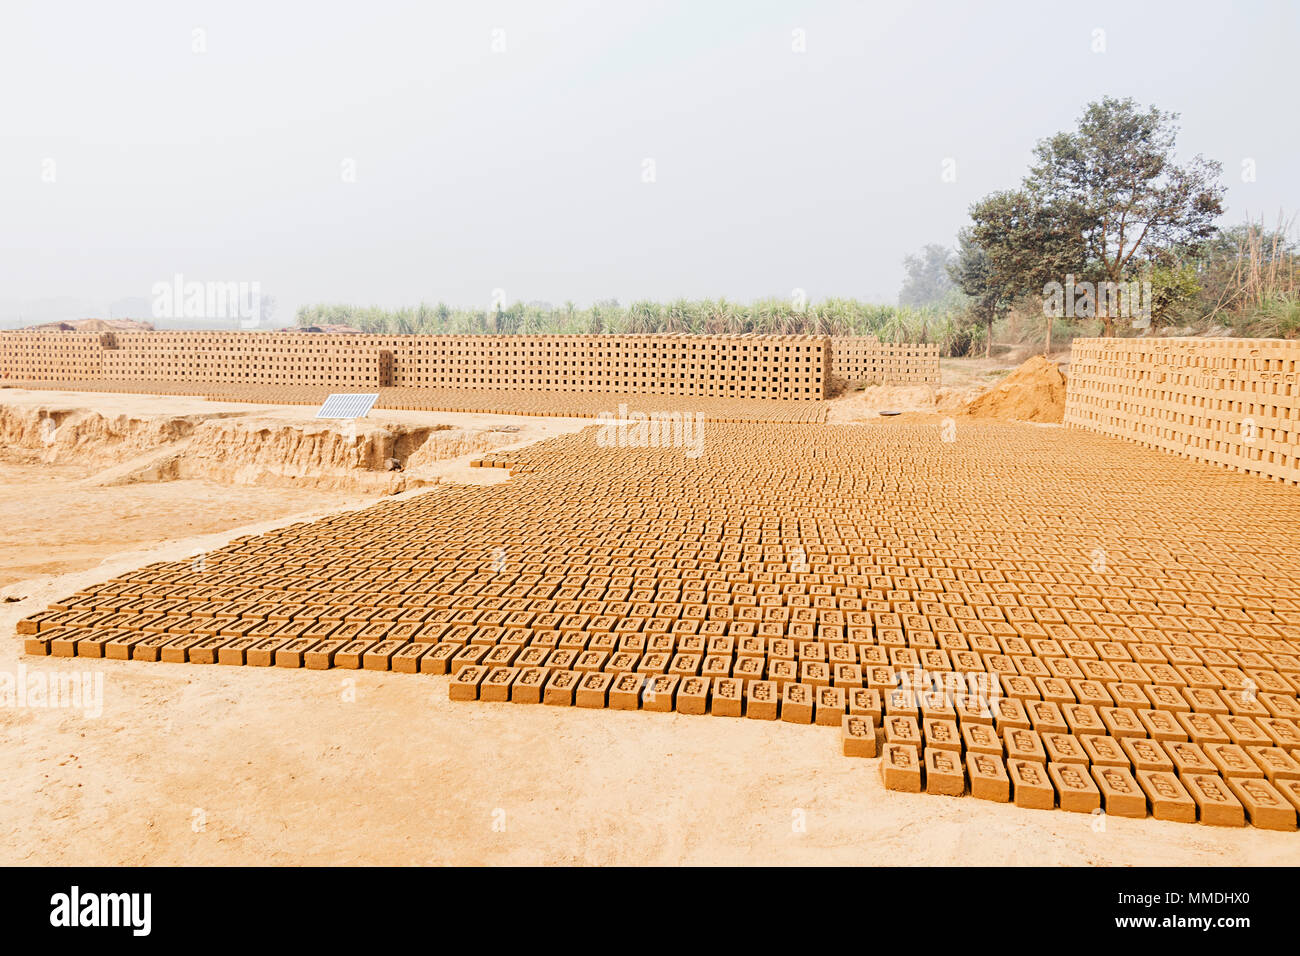 Fülle Stapel von Backsteinen in Brick-Factory, Dorf Uttar Pradesh - Indien Stockfoto